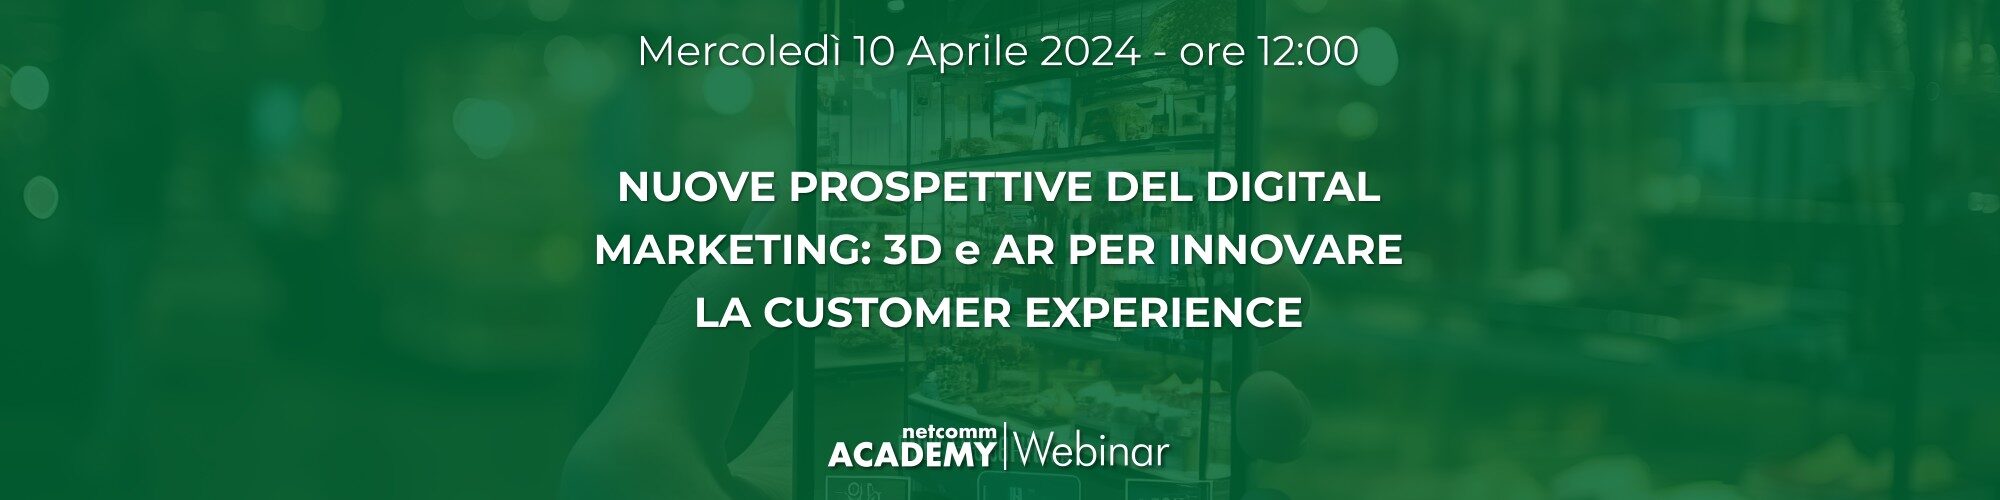 Nuove prospettive del Digital Marketing: 3D & AR per innovare la Customer Experience